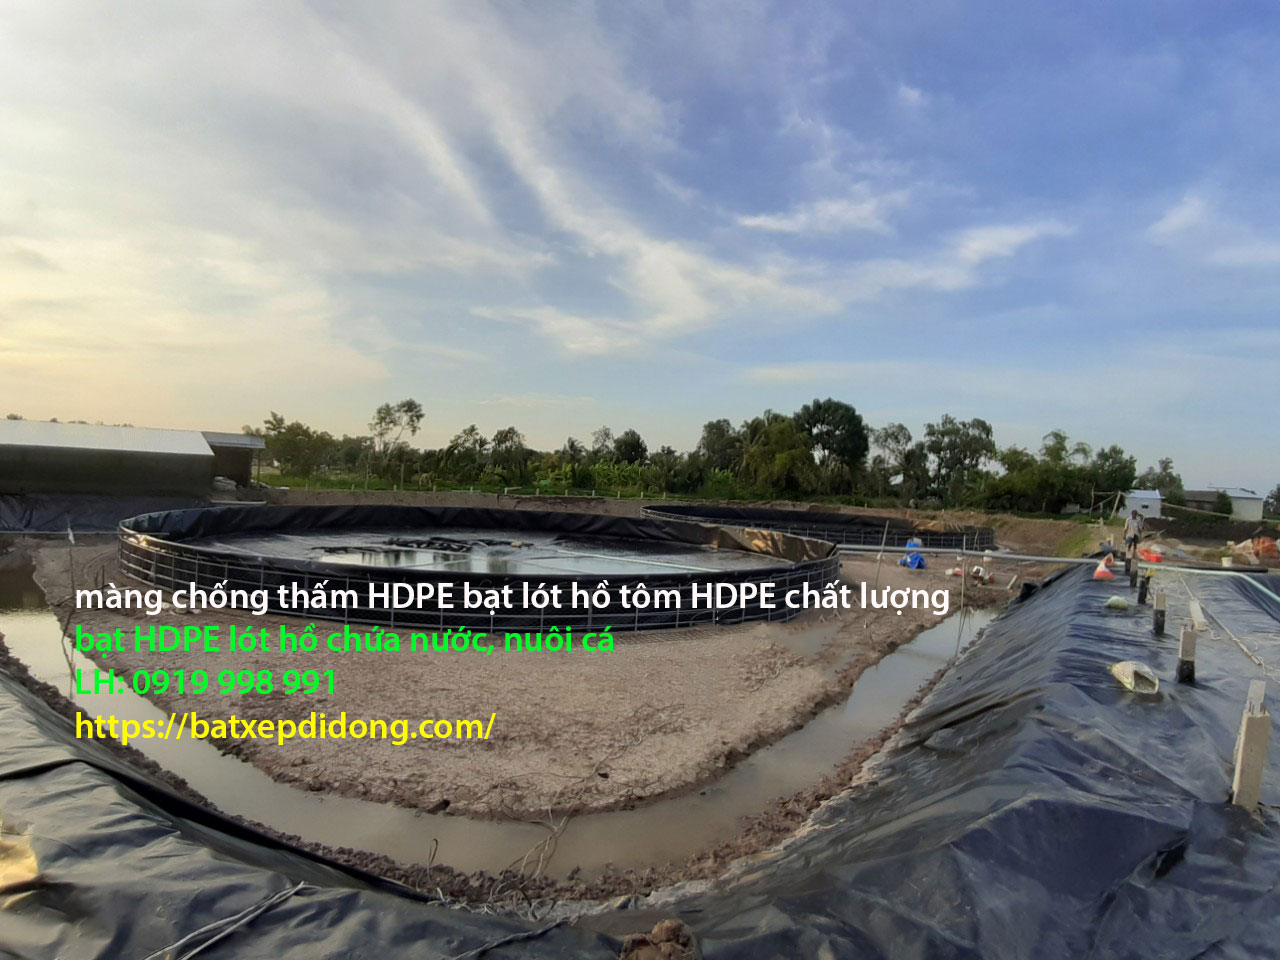 Bạt HDPE lót bờ ao chống thấm, bạt lót hồ chứa nước Bình Phước